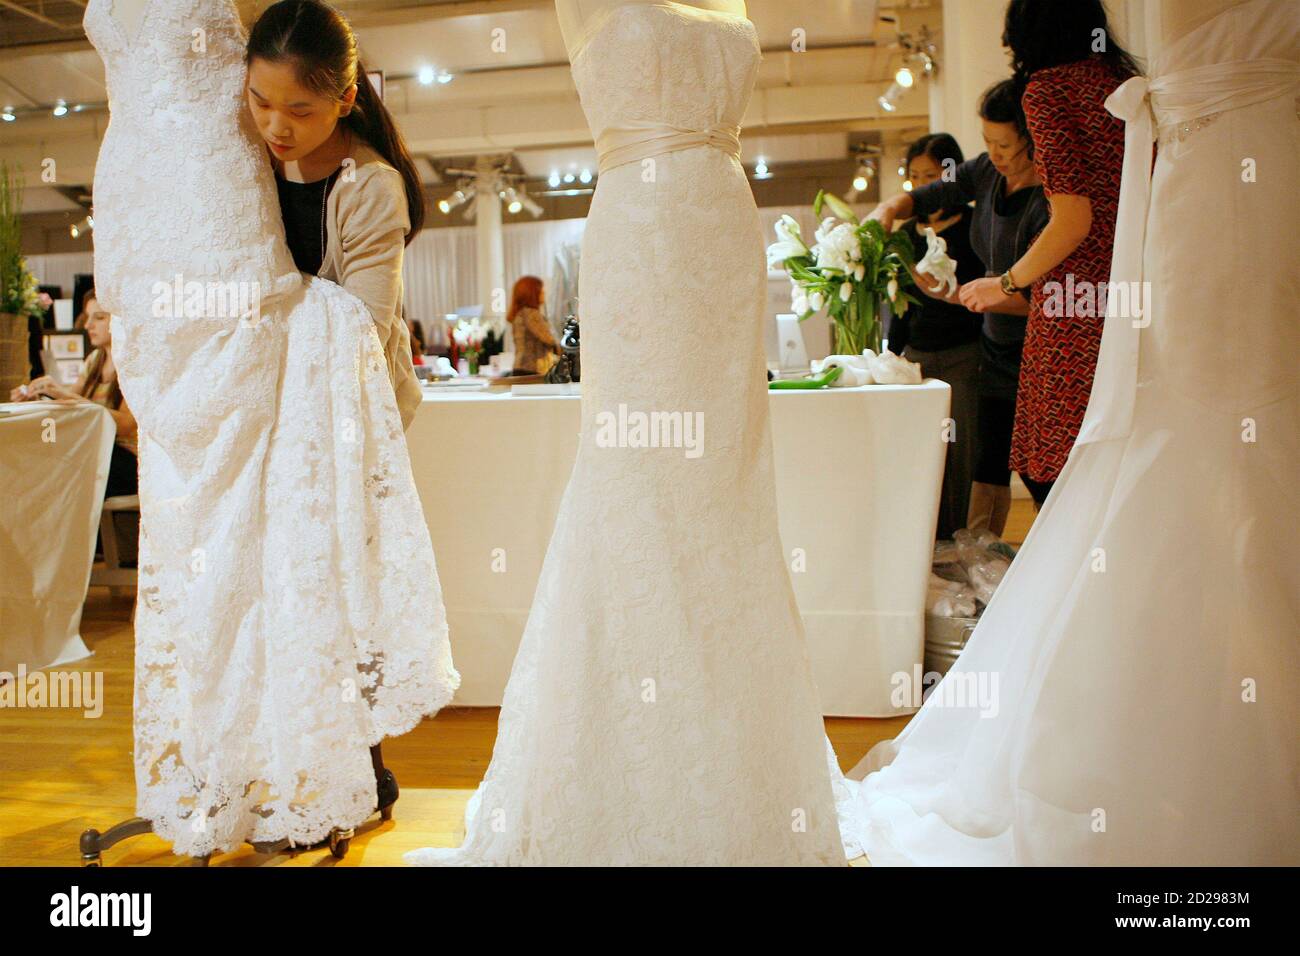 Katherine Yung, la vendedora de vestidos de boda, prepara vestidos para la presentación del stand de antes de espectáculo de bodas en Nueva York el 2 de abril de